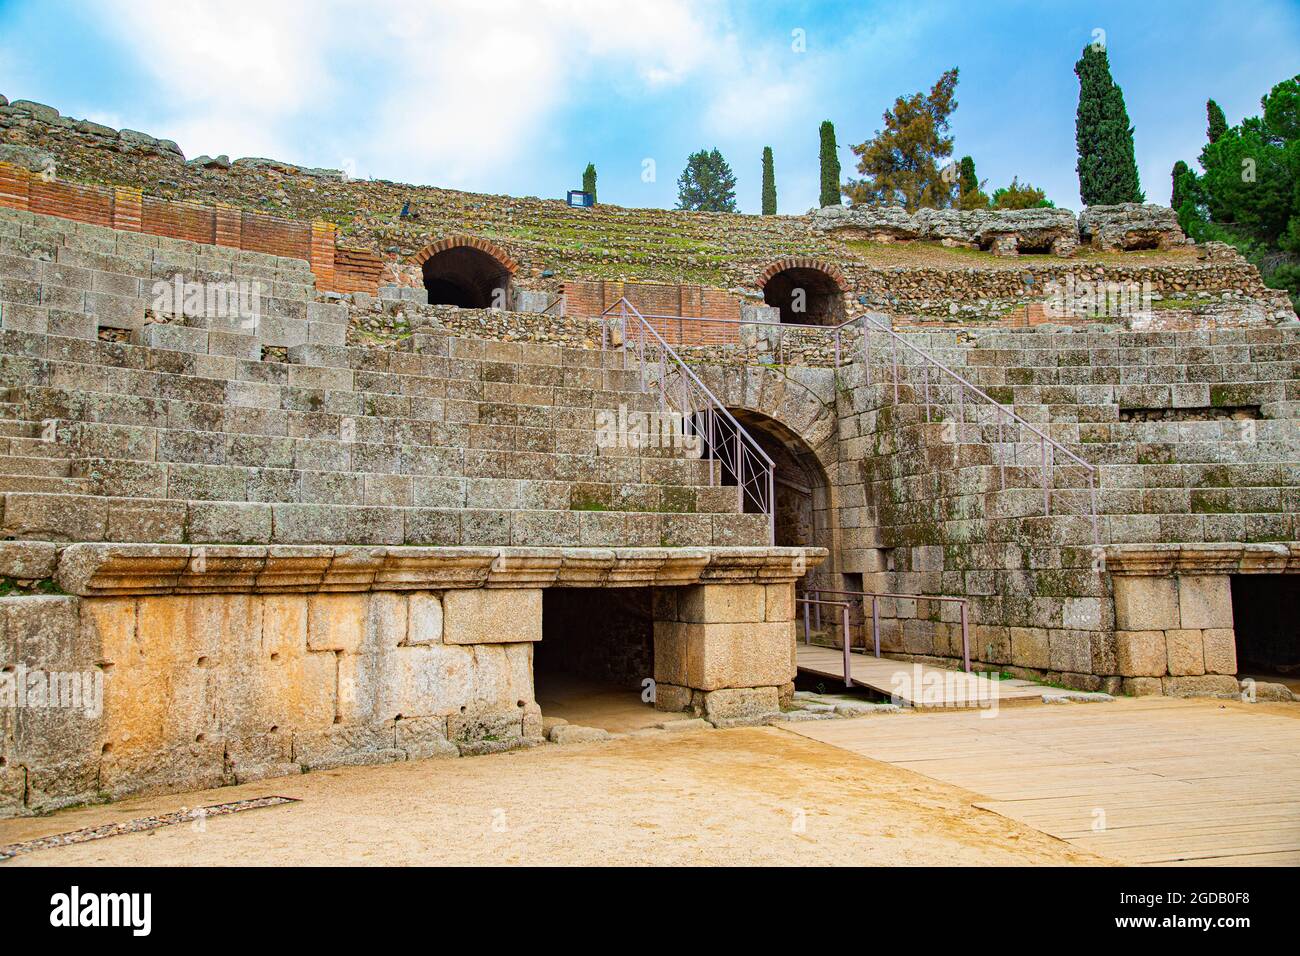 Coliseo o Arena de juegos romanos de la ciudad de Merida, con arcos de entrada y gradas rodeándola Stock Photo